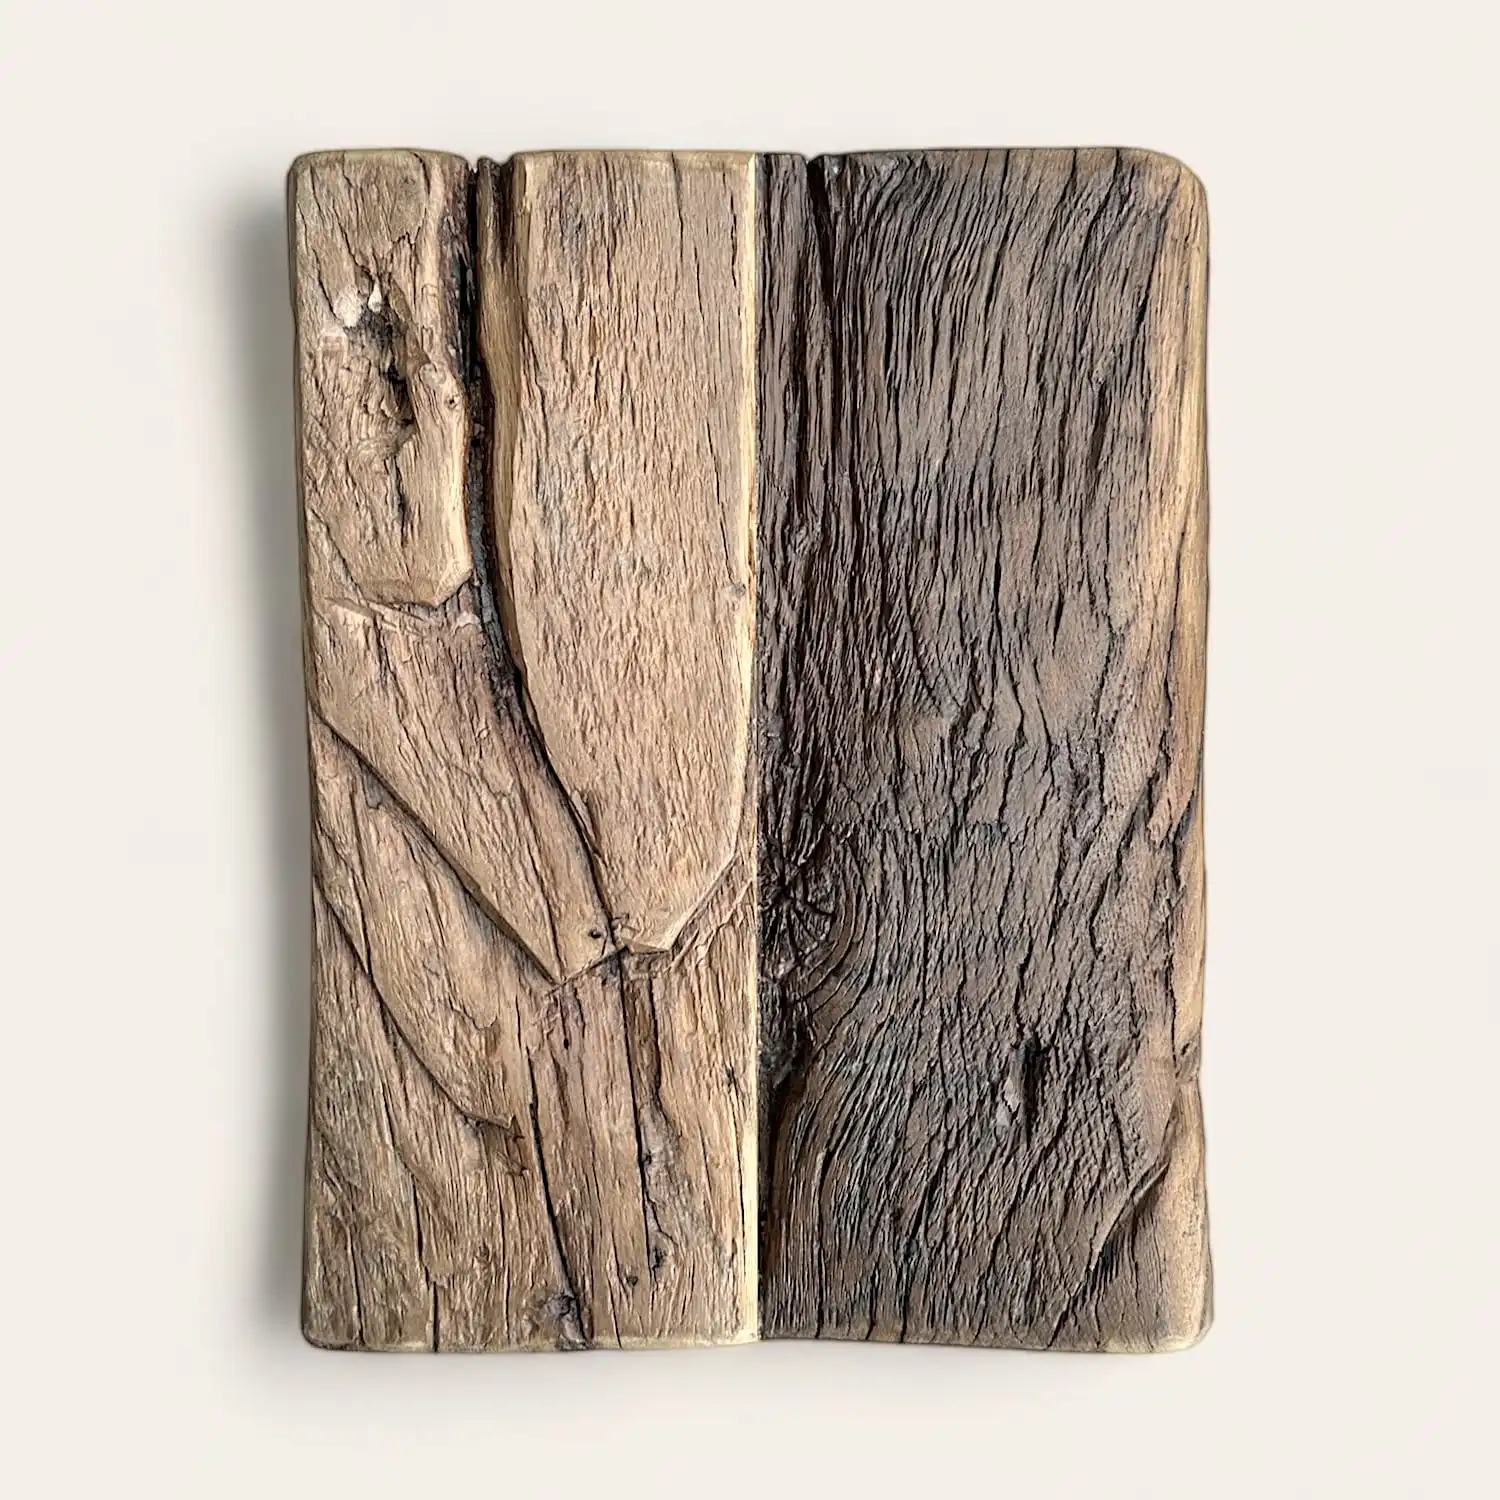  Un morceau de vieux bois sur une surface blanche. 